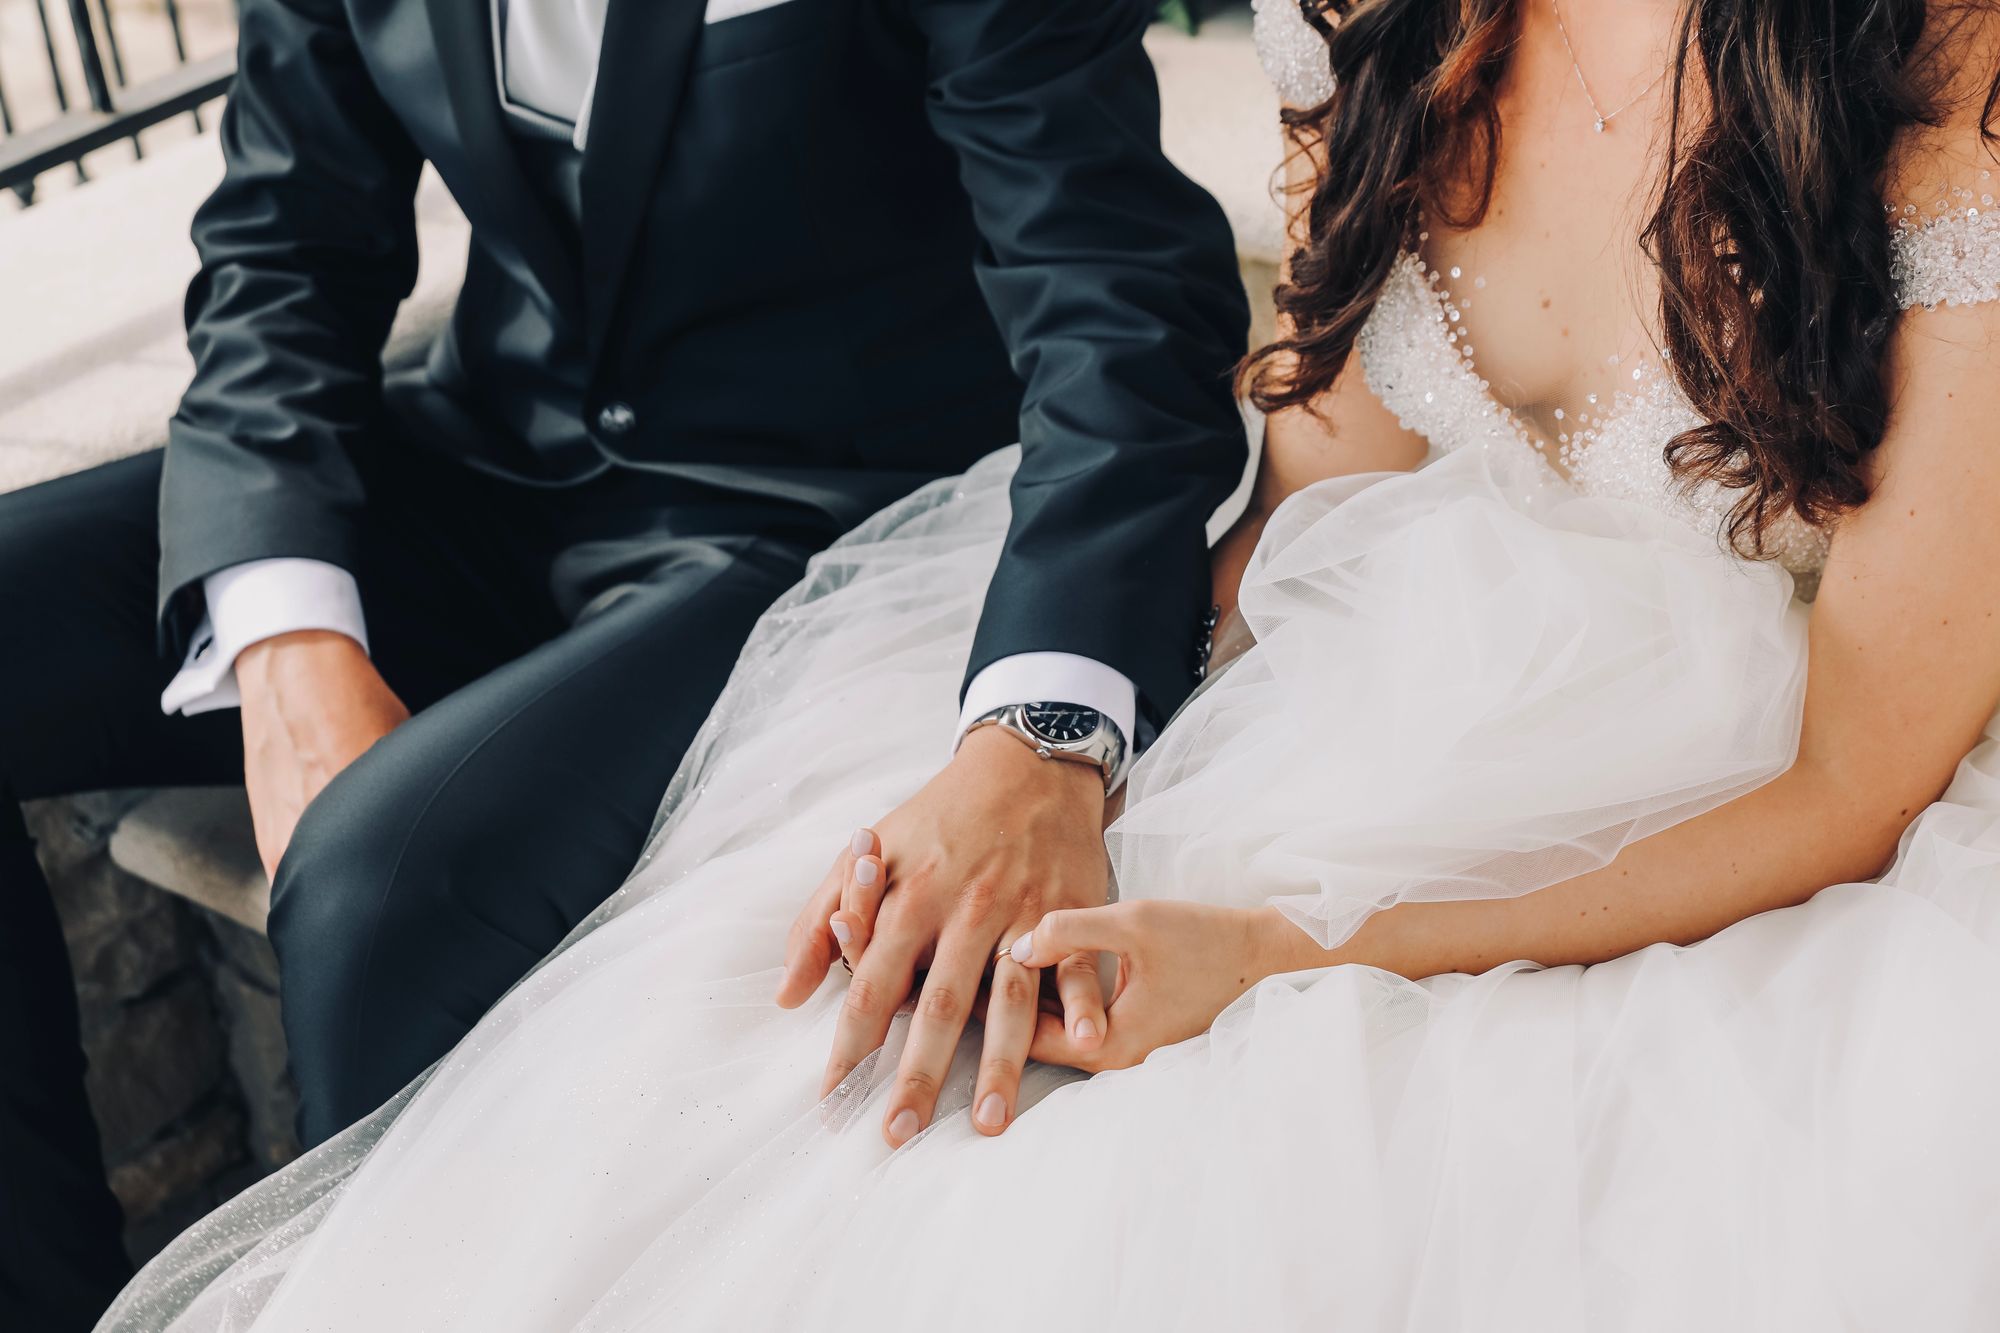 Eine Braut und ein Bräutigam sitzen Händchen haltend auf einer Bank.